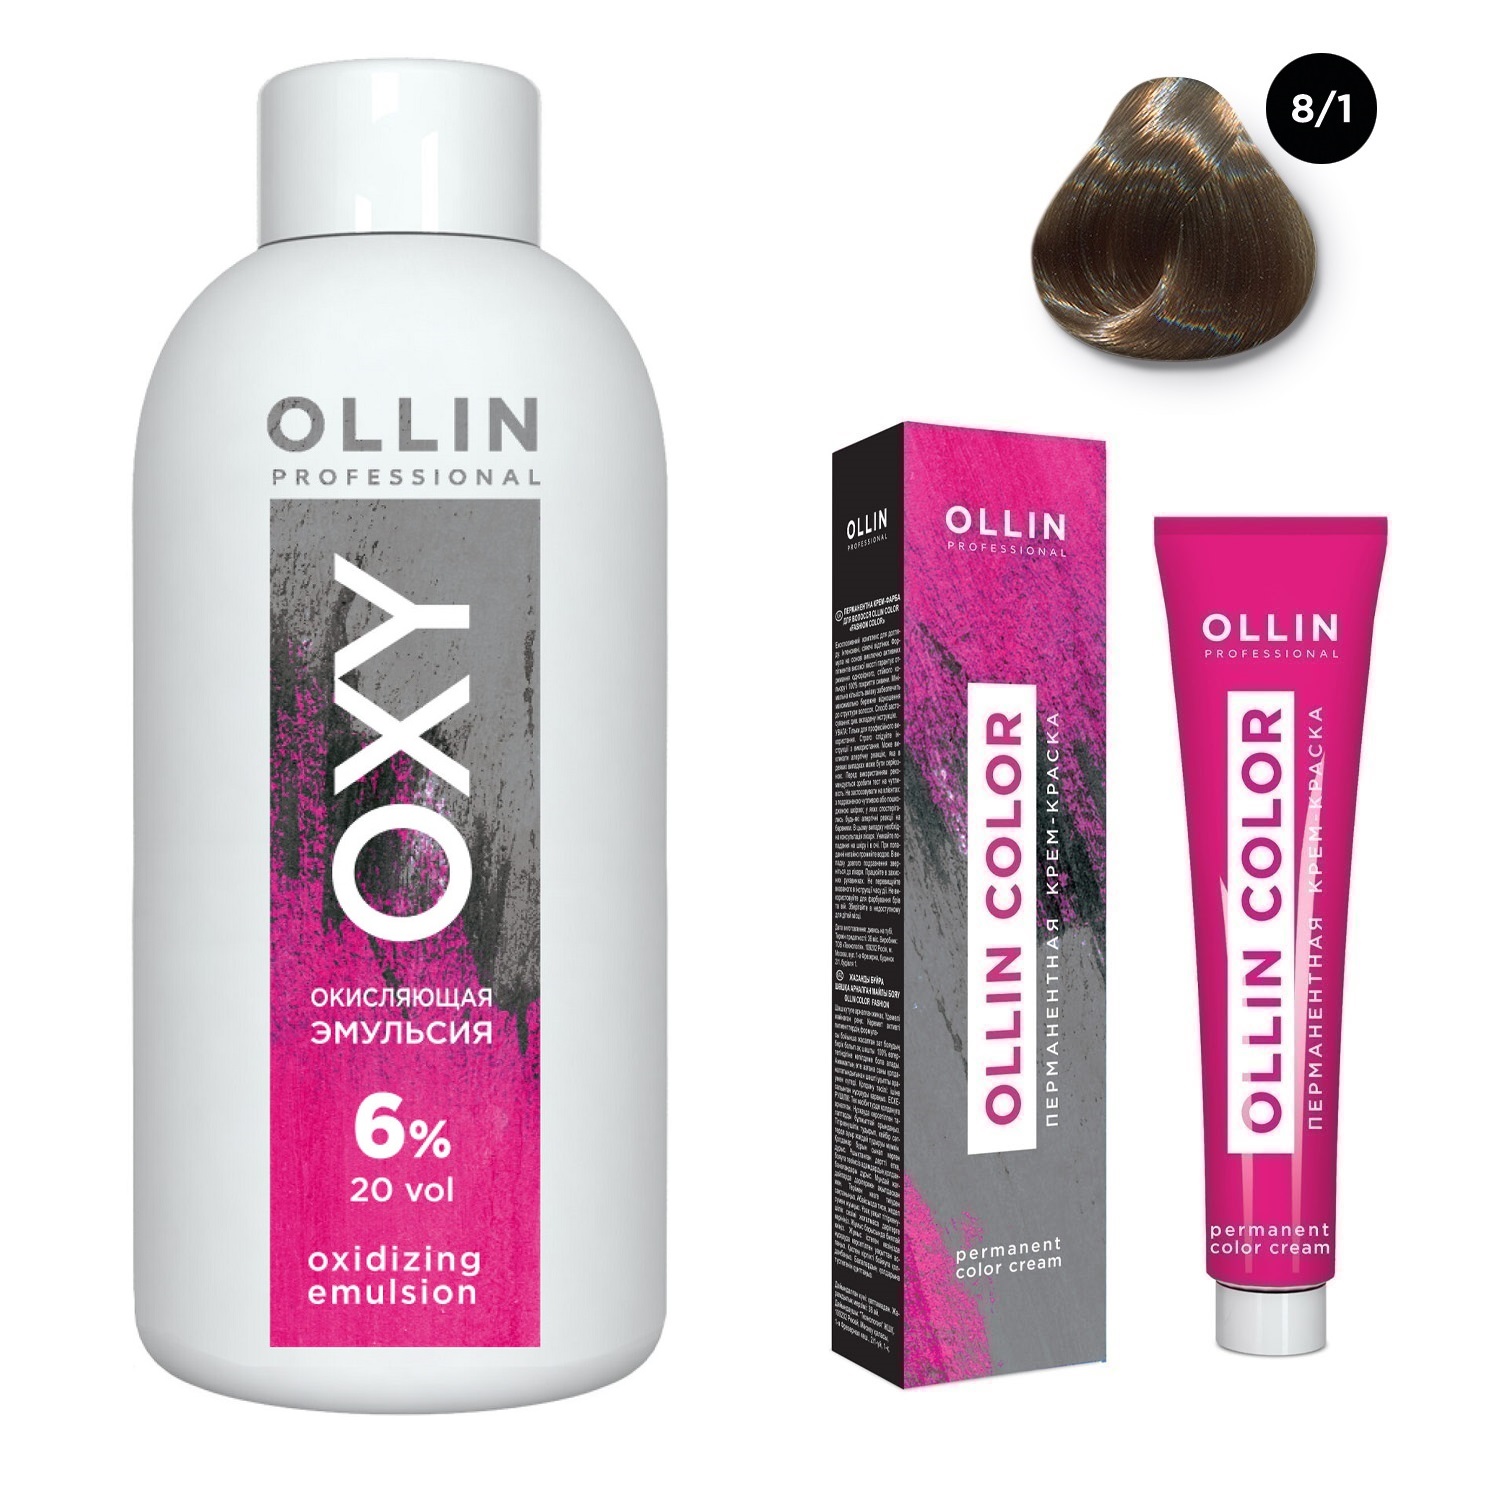 Ollin Professional Набор Перманентная крем-краска для волос Ollin Color оттенок 8/1 светло-русый пепельный 100 мл + Окисляющая эмульсия Oxy 6% 150 мл (Ollin Professional, Ollin Color) фото